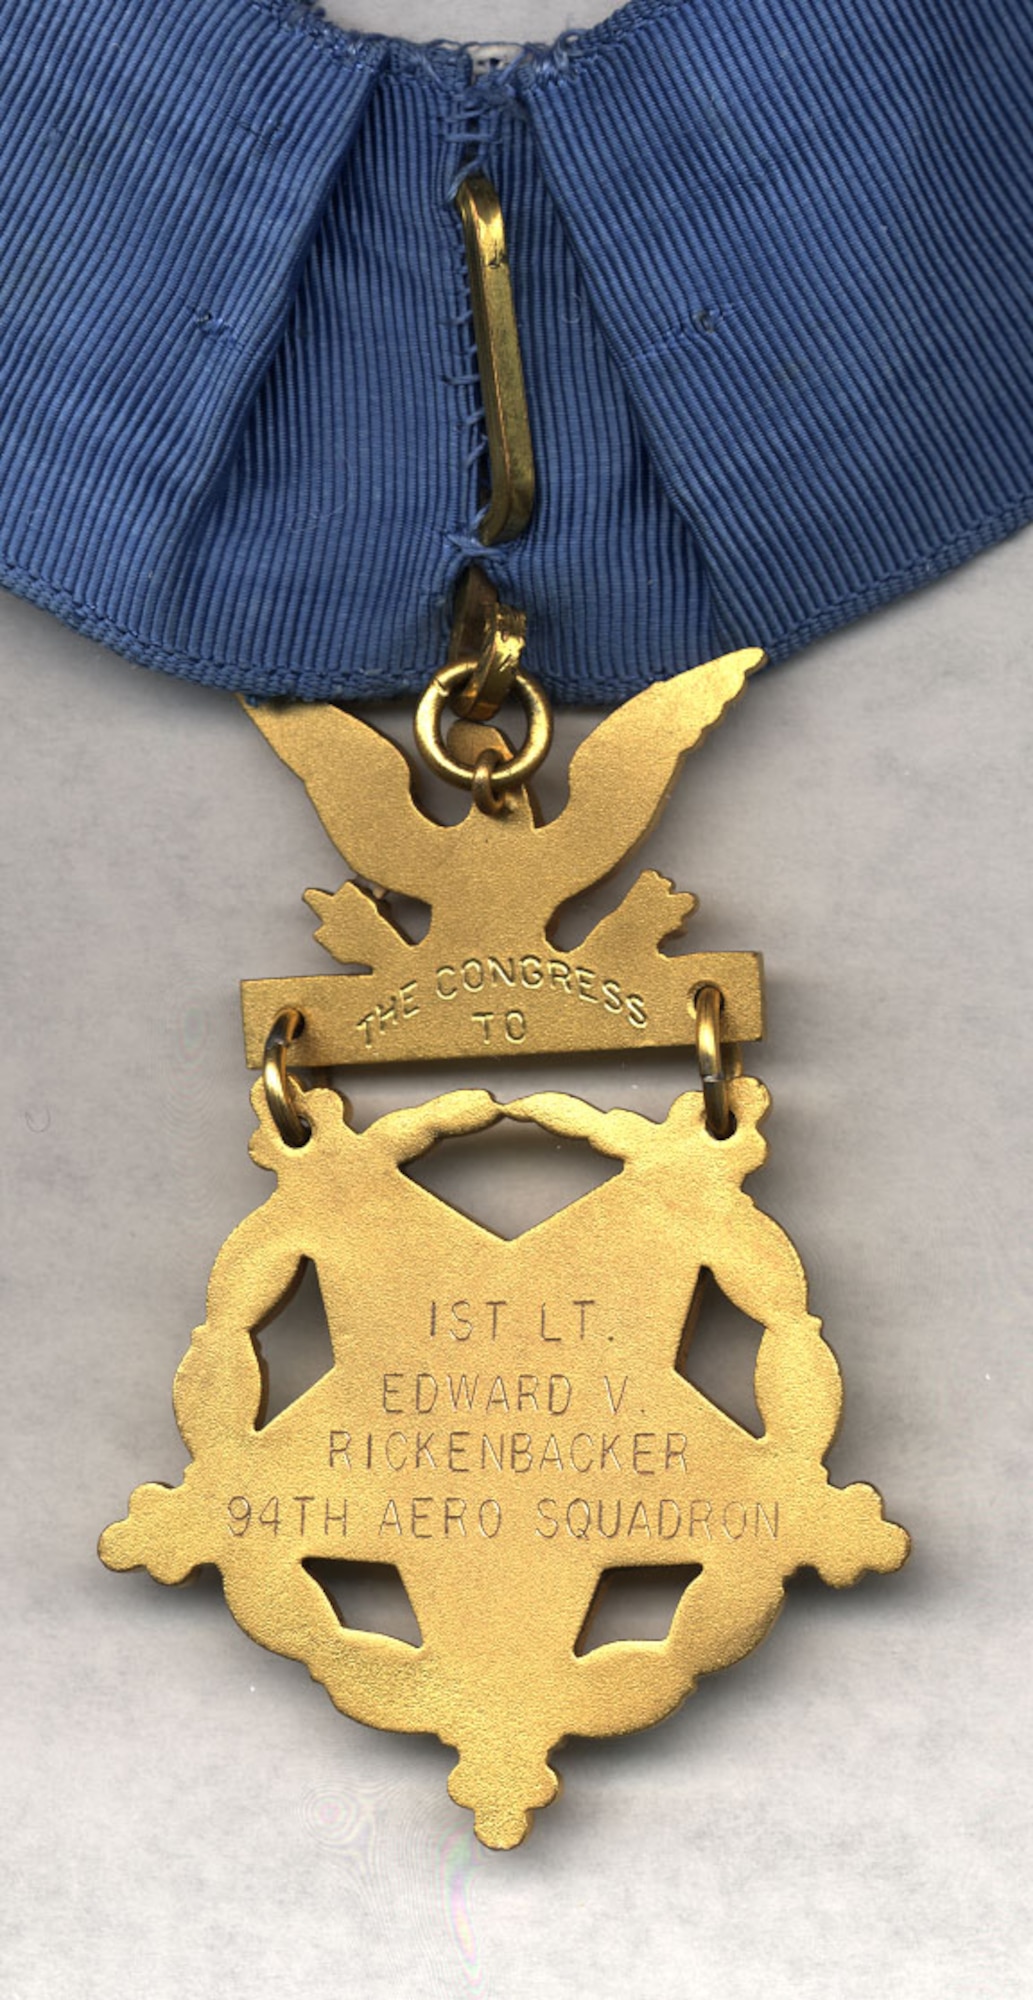 Capt. Eddie Rickenbacker Medal of Honor. (U.S. Air Force photo)